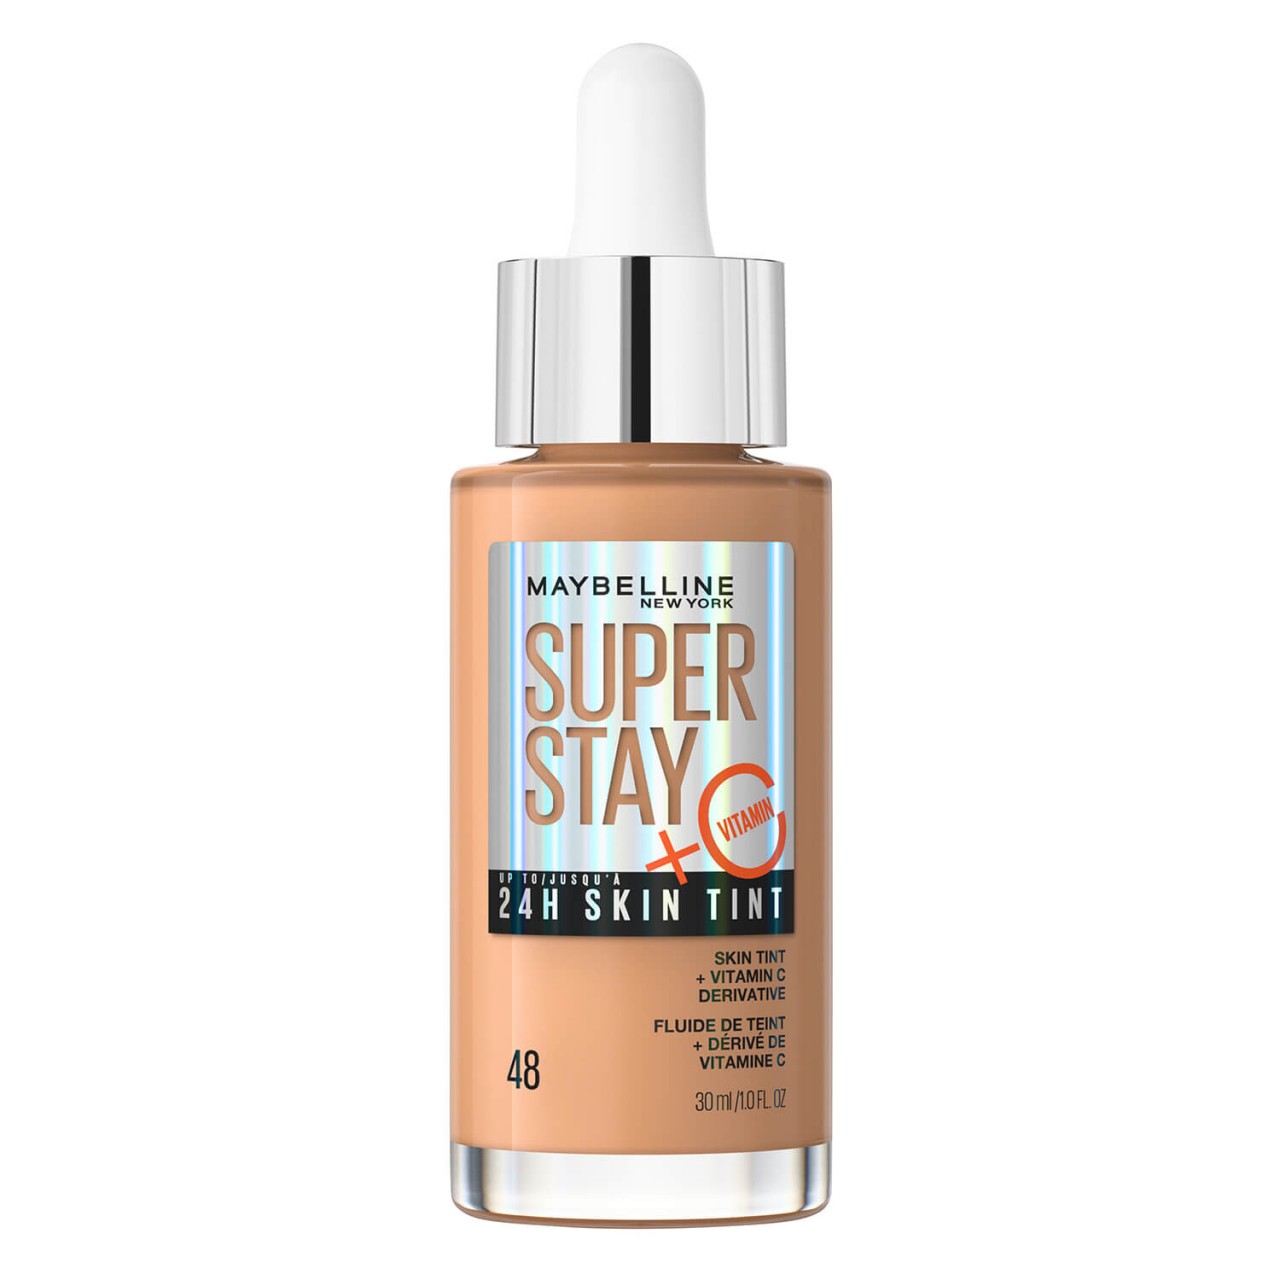 Maybelline NY Teint - Super Stay 24H Skin Tint Sun Beige 48 von Maybelline New York